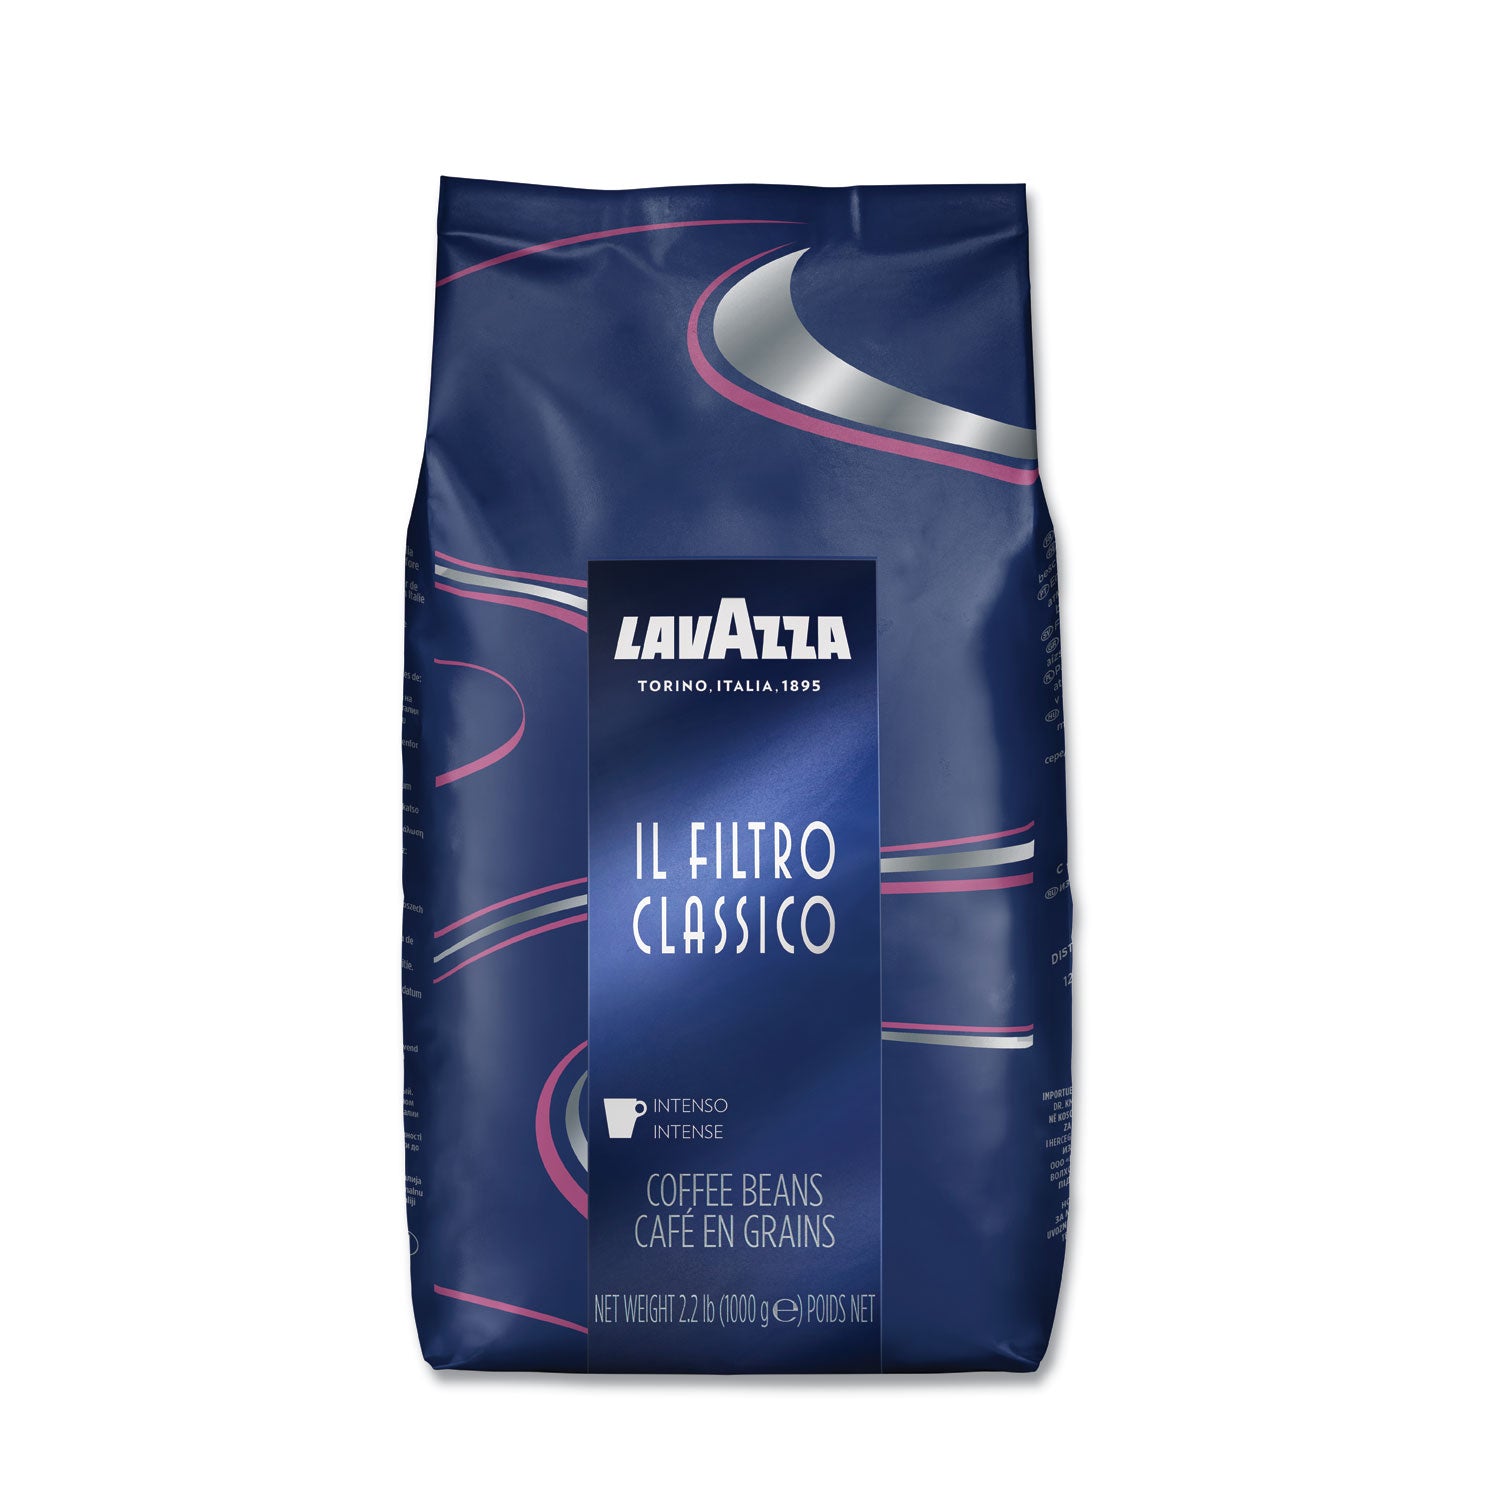 filtro-classico-whole-bean-coffee-dark-and-intense-22-lb-bag_lav3445 - 1